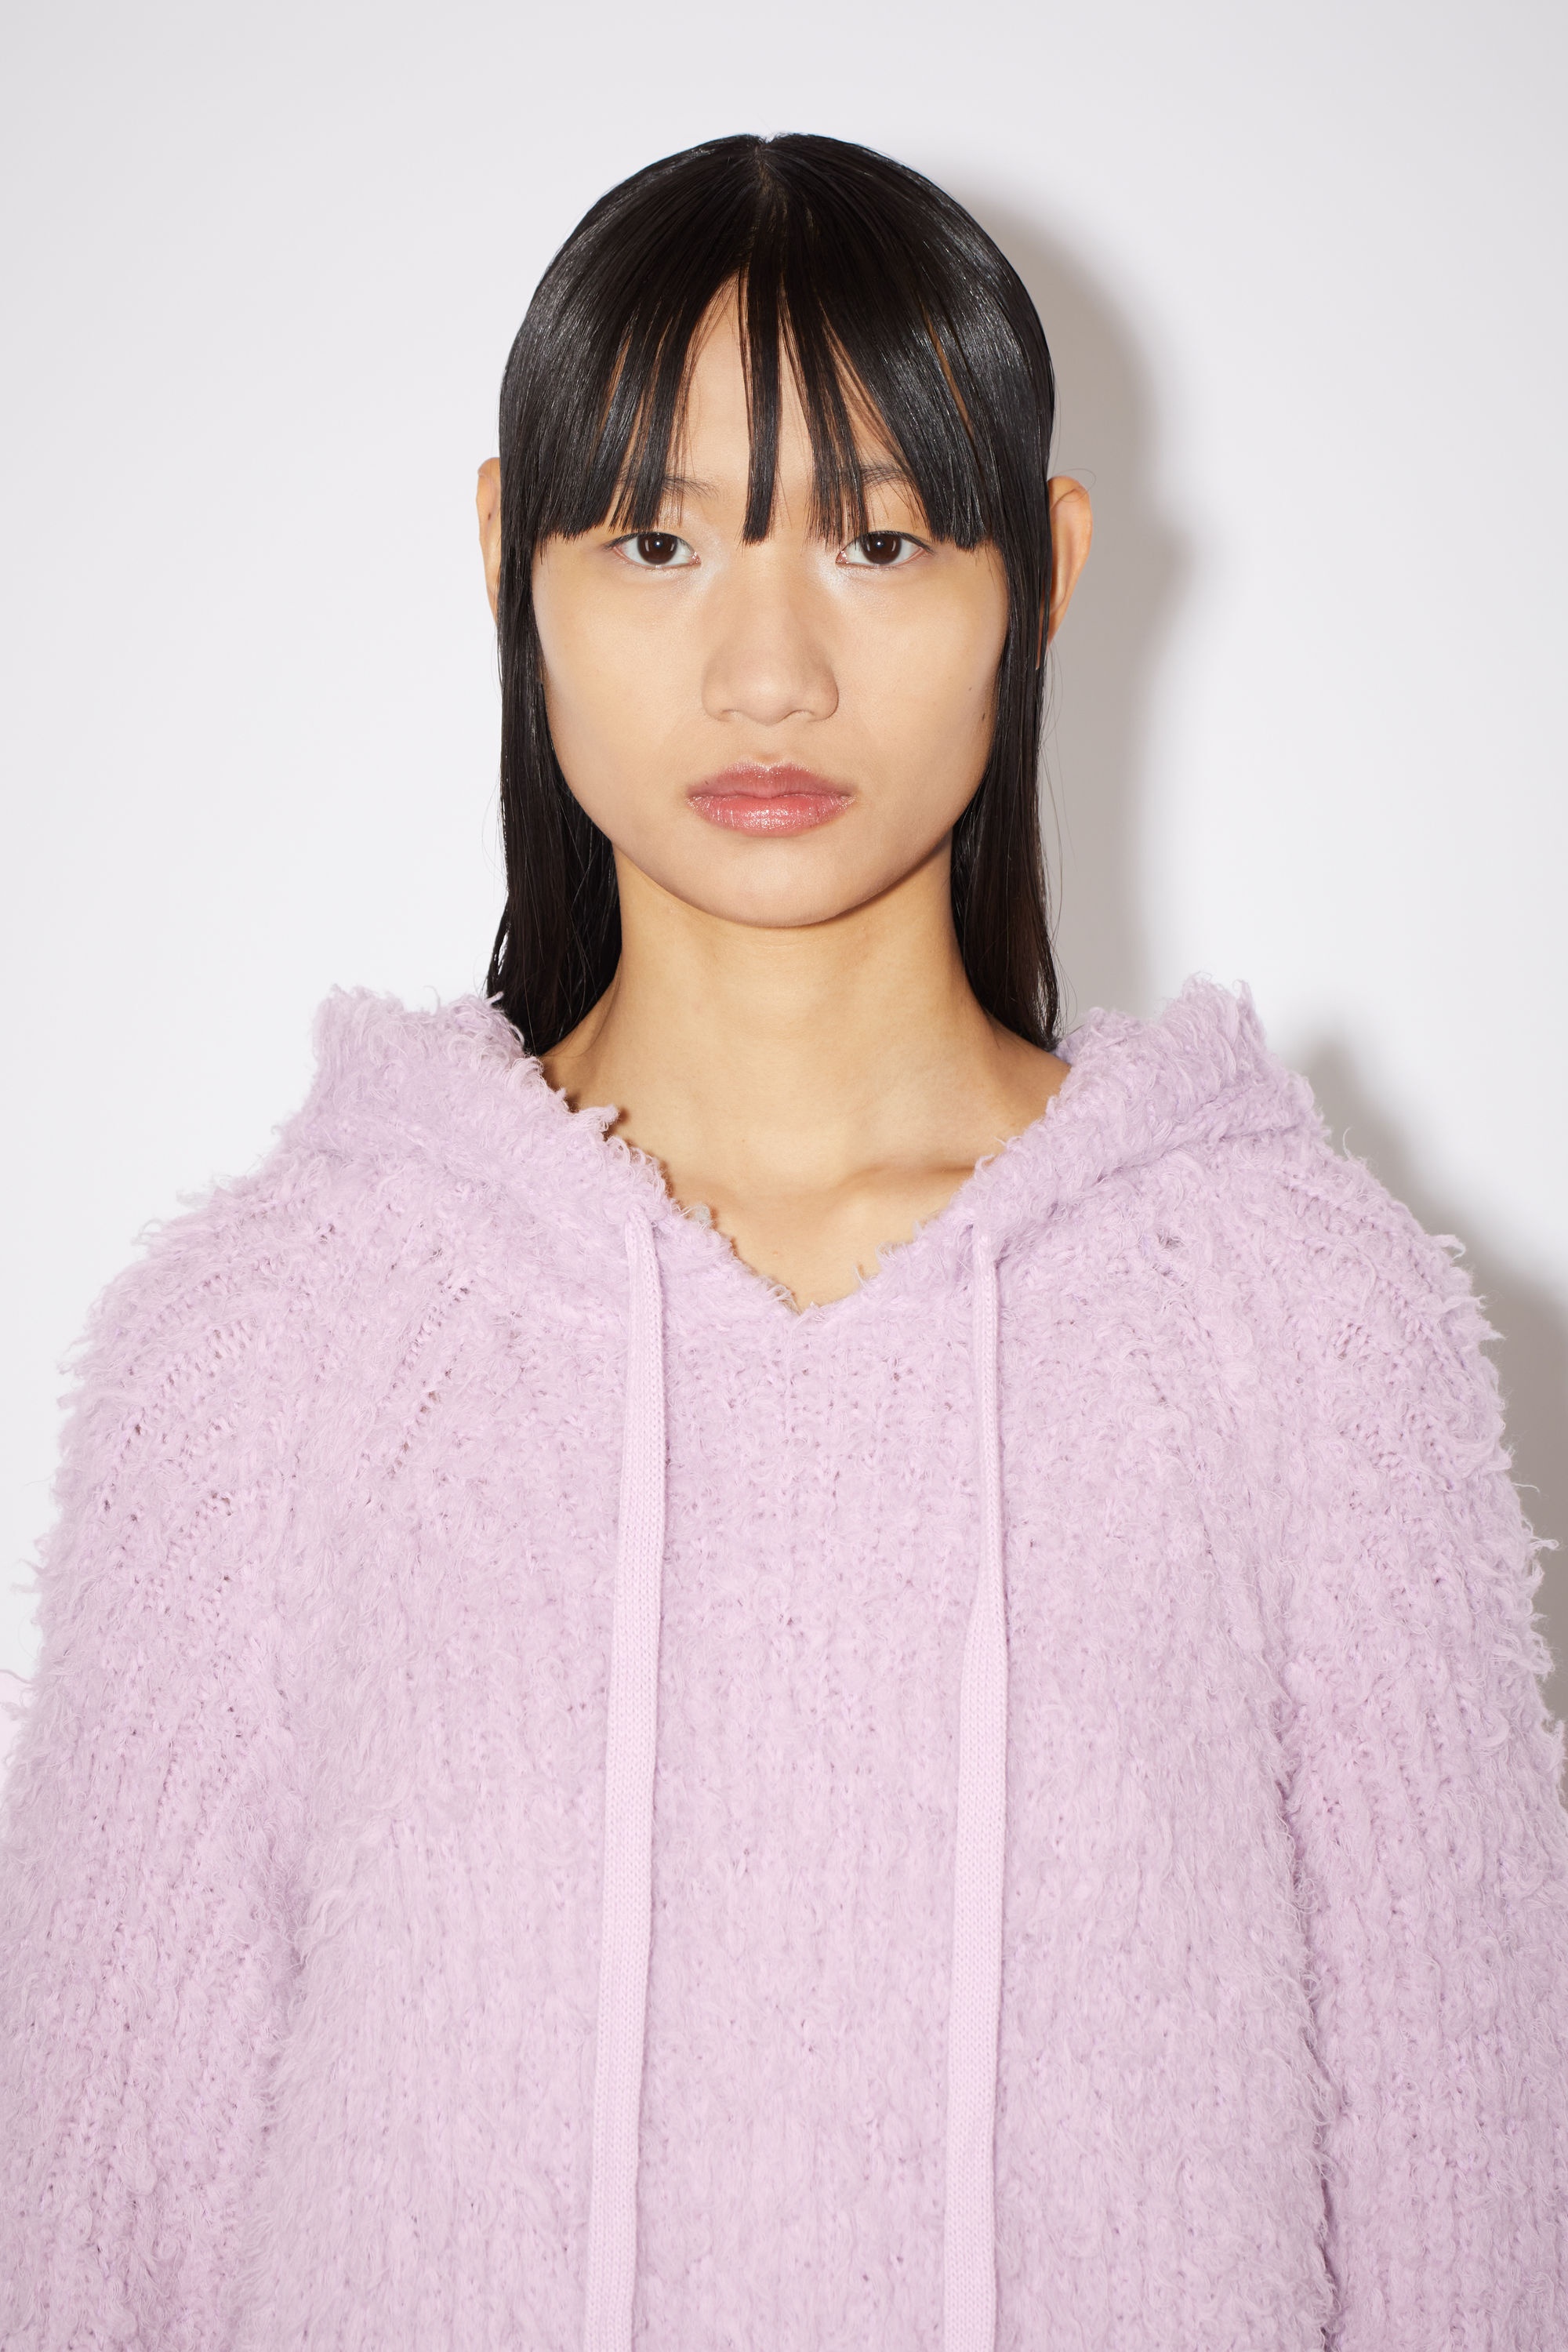 Acne Studios - Wool mohair hoodie - Faded pink